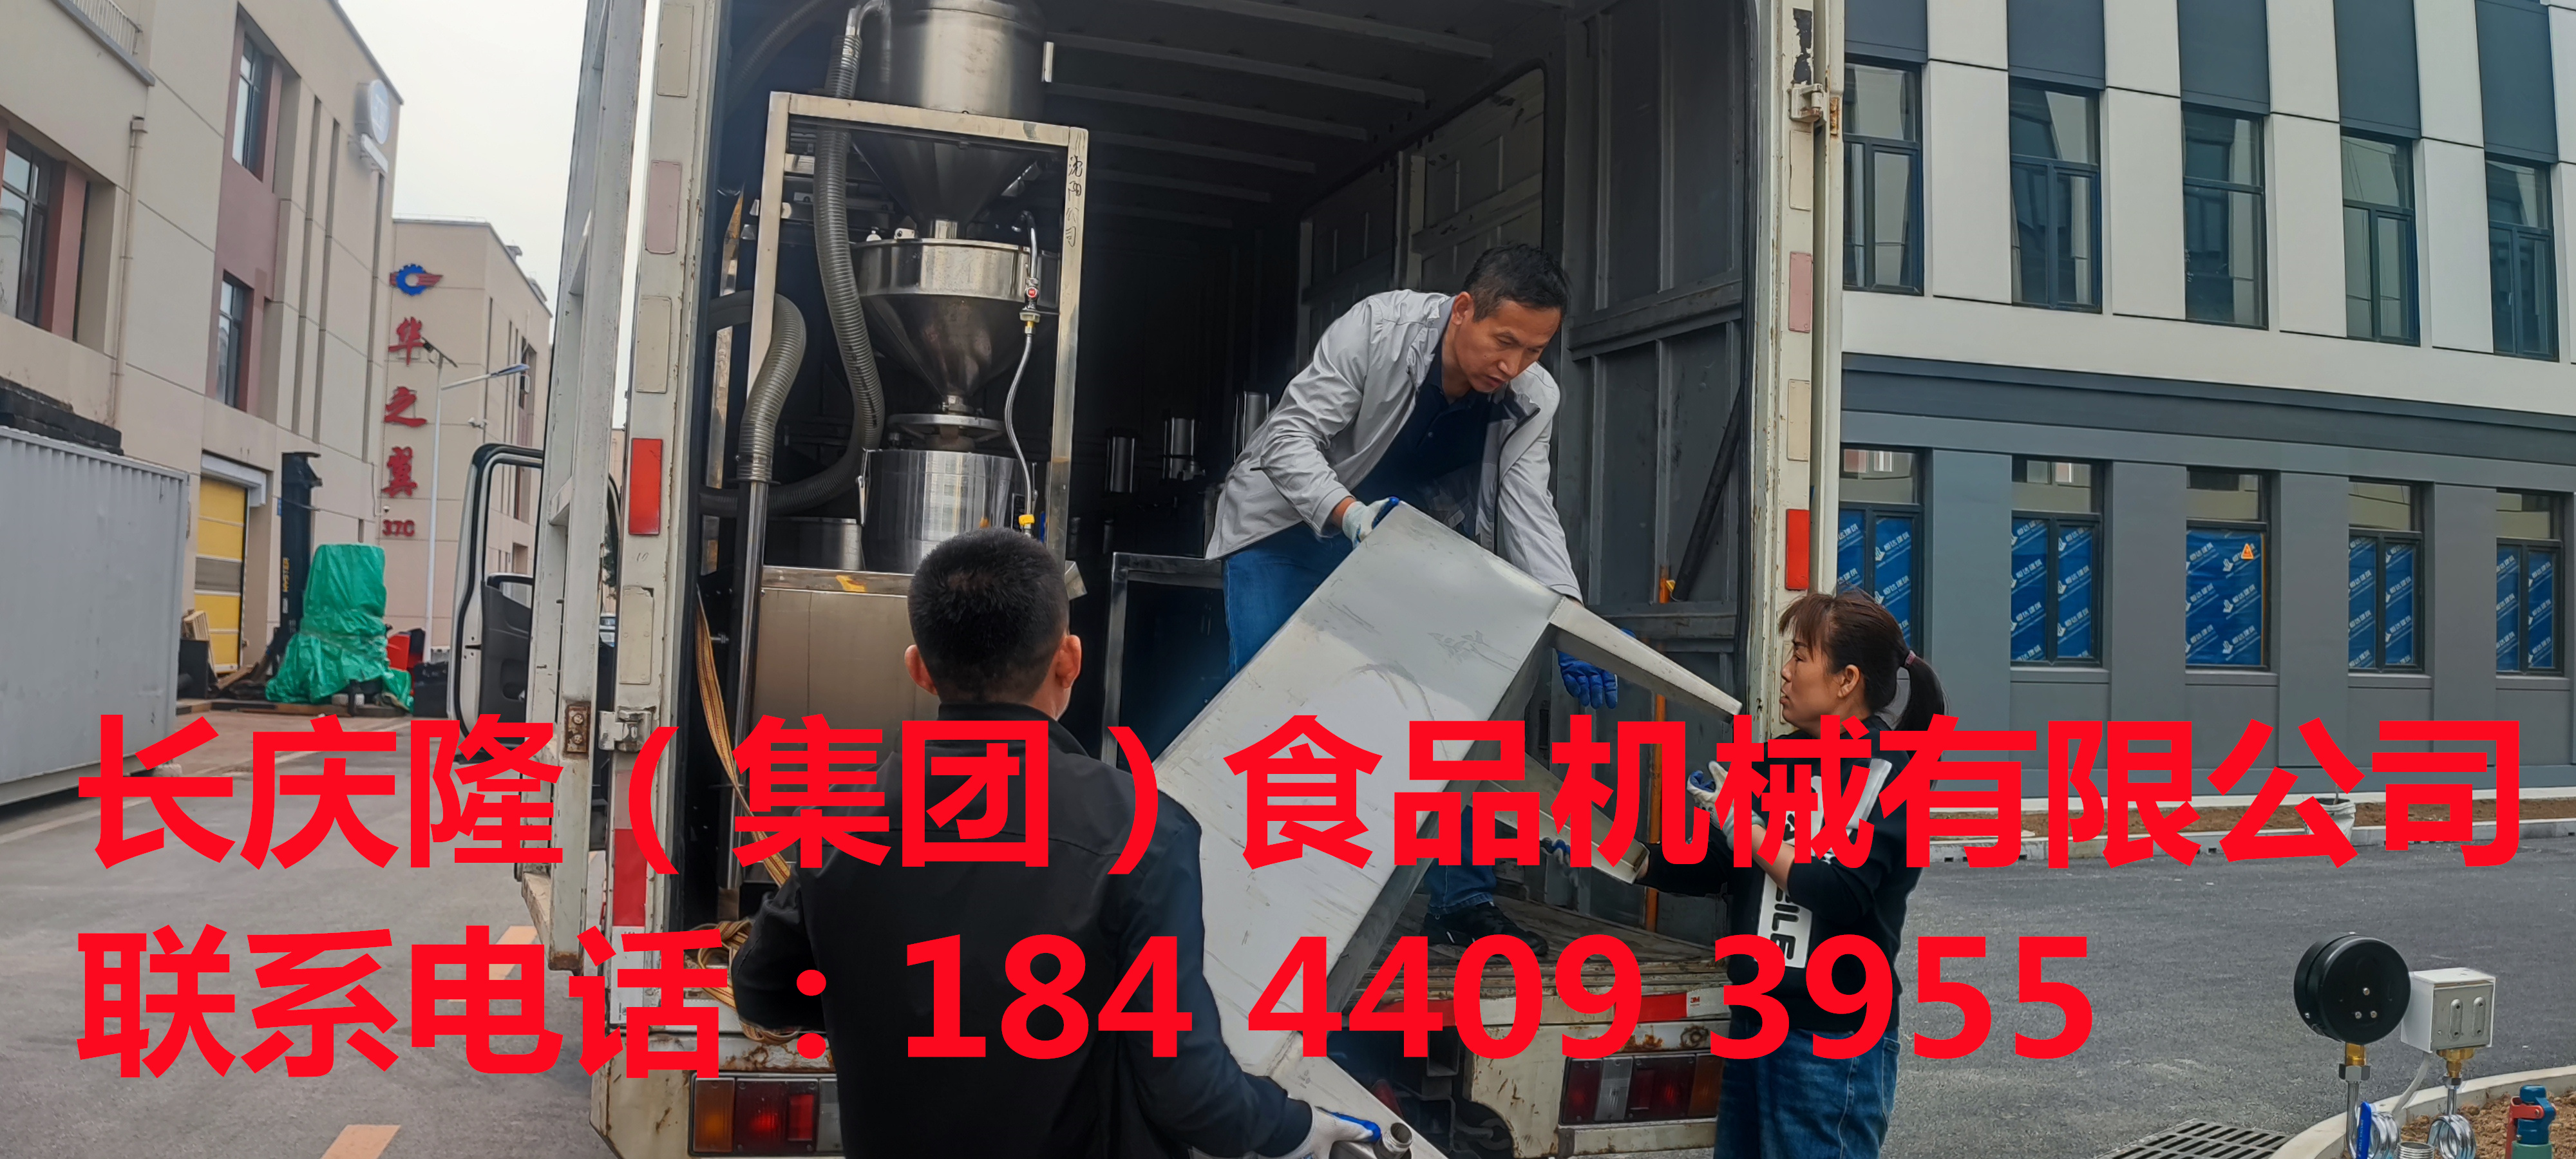 大连王先生在长庆隆购买了卧式双连磨浆机、四工位气动大豆腐机、48Kw电锅炉和60型外入式豆浆锅等全套设备，学习完毕装车发货。 (1).jpg